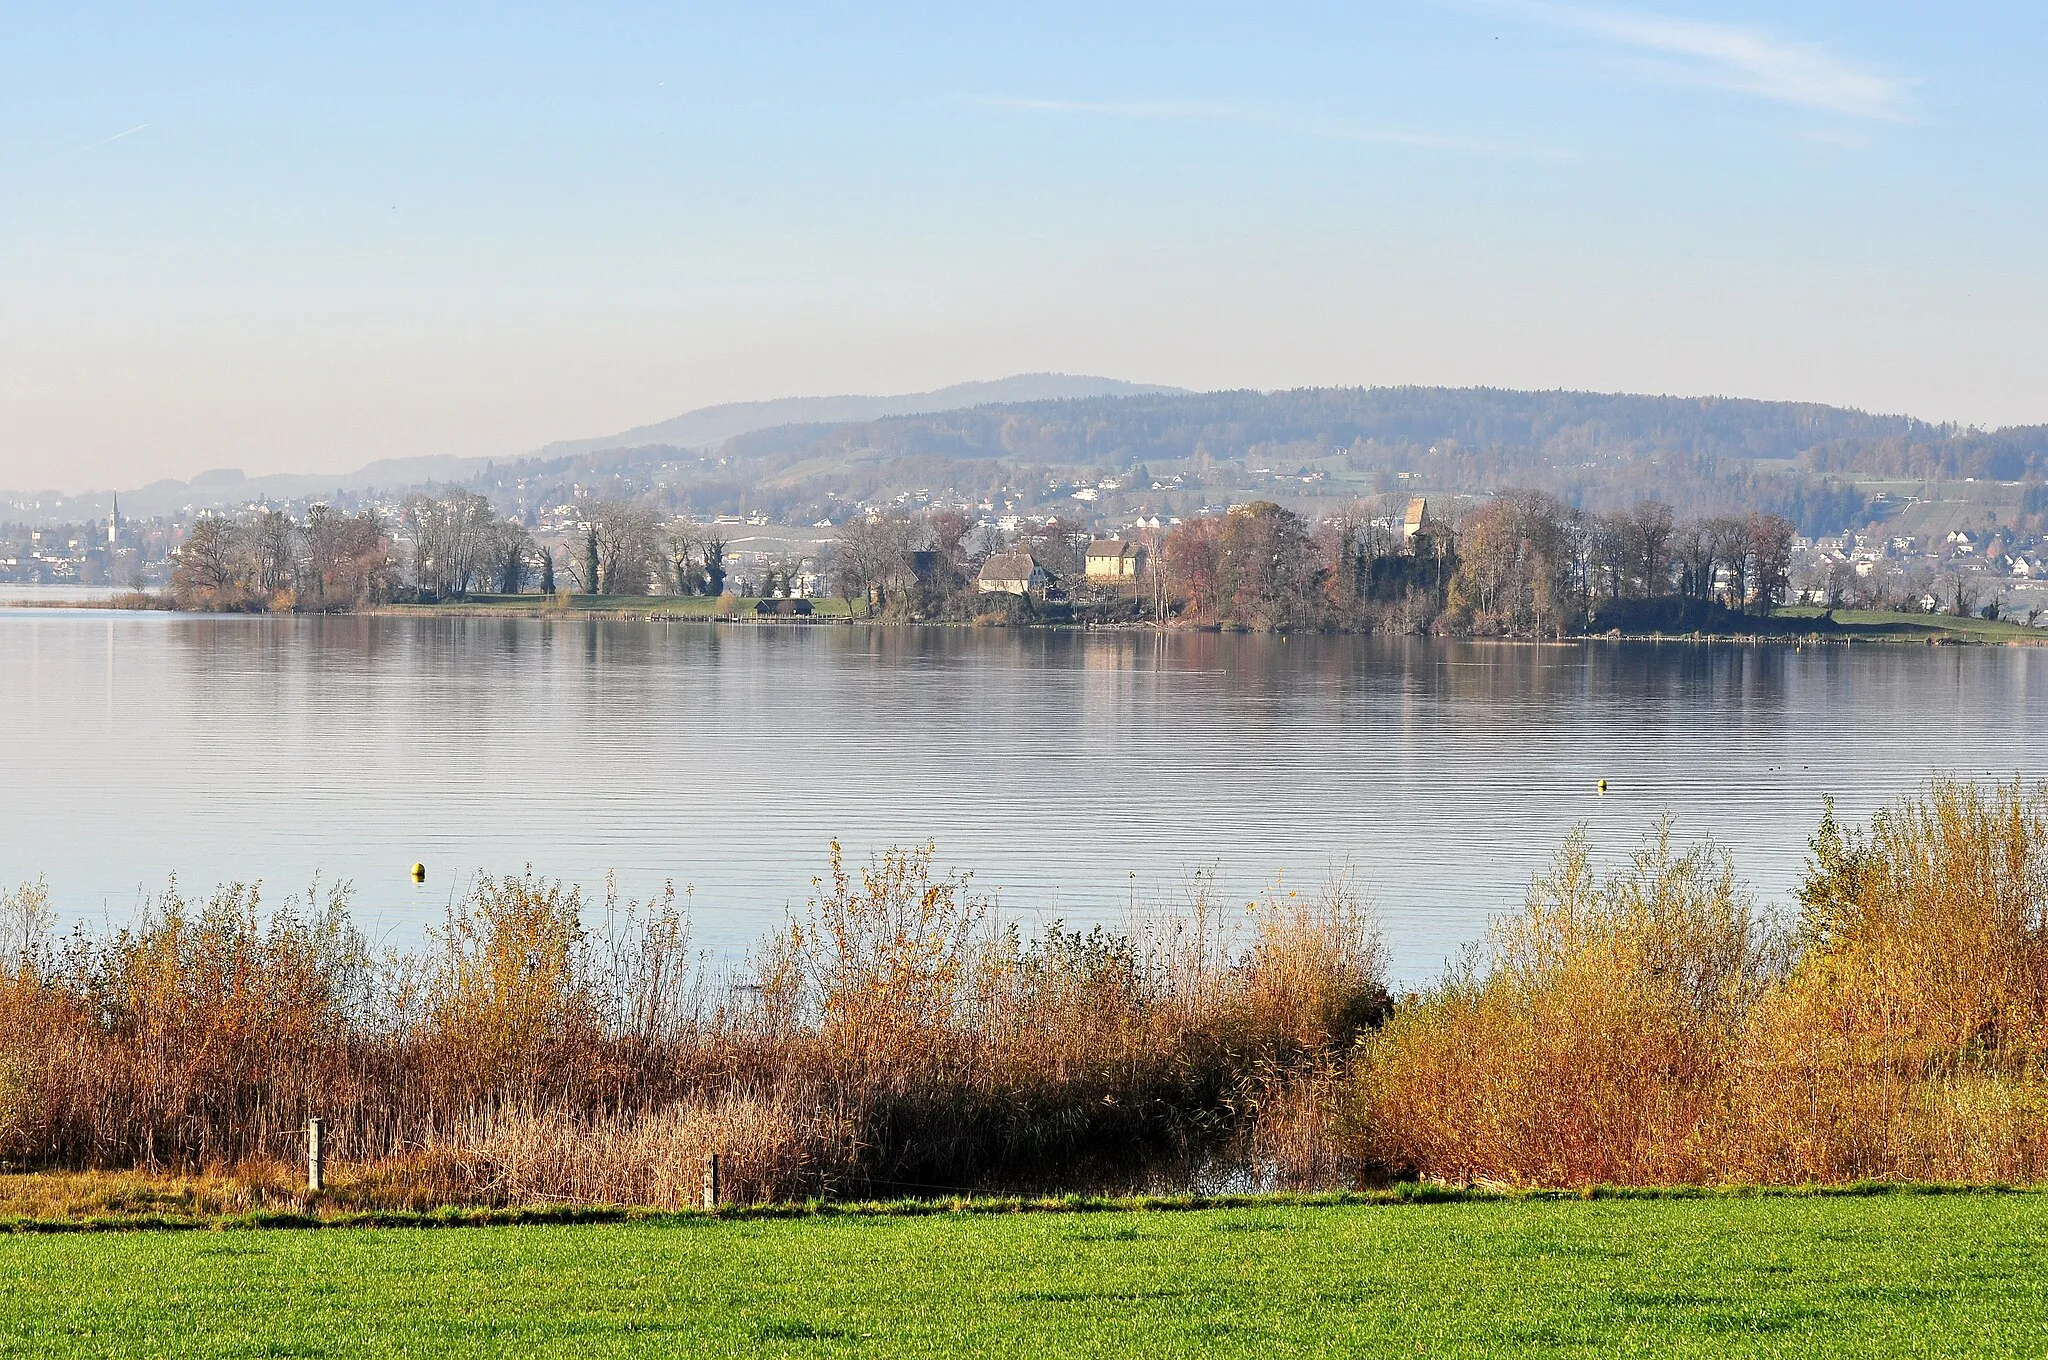 Photo showing: Frauenwinkel protected area on Zürichsee (Lake Zürich) in Switzerland, as seen from Seedamm, Ufenau island and Pfannenstiel in the background.